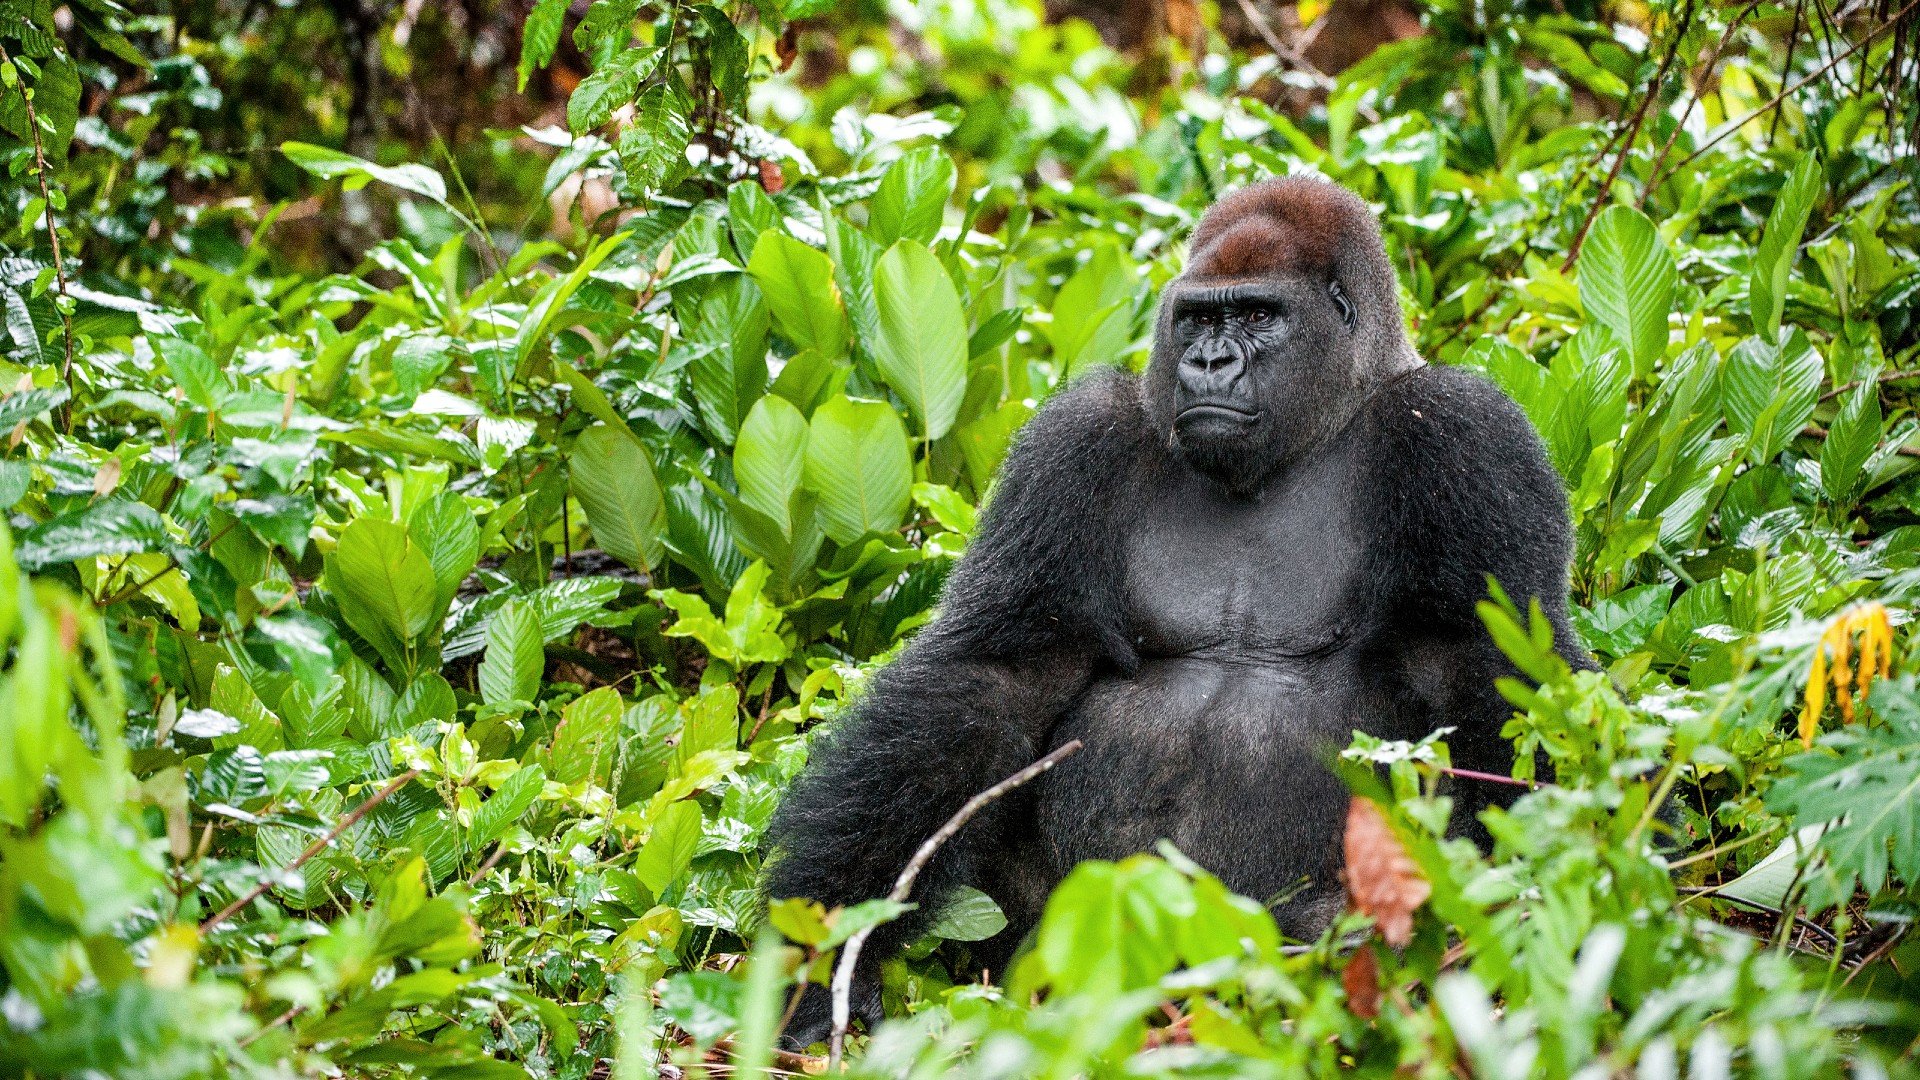 A wild gorilla sitting in dense leafy undergrowth